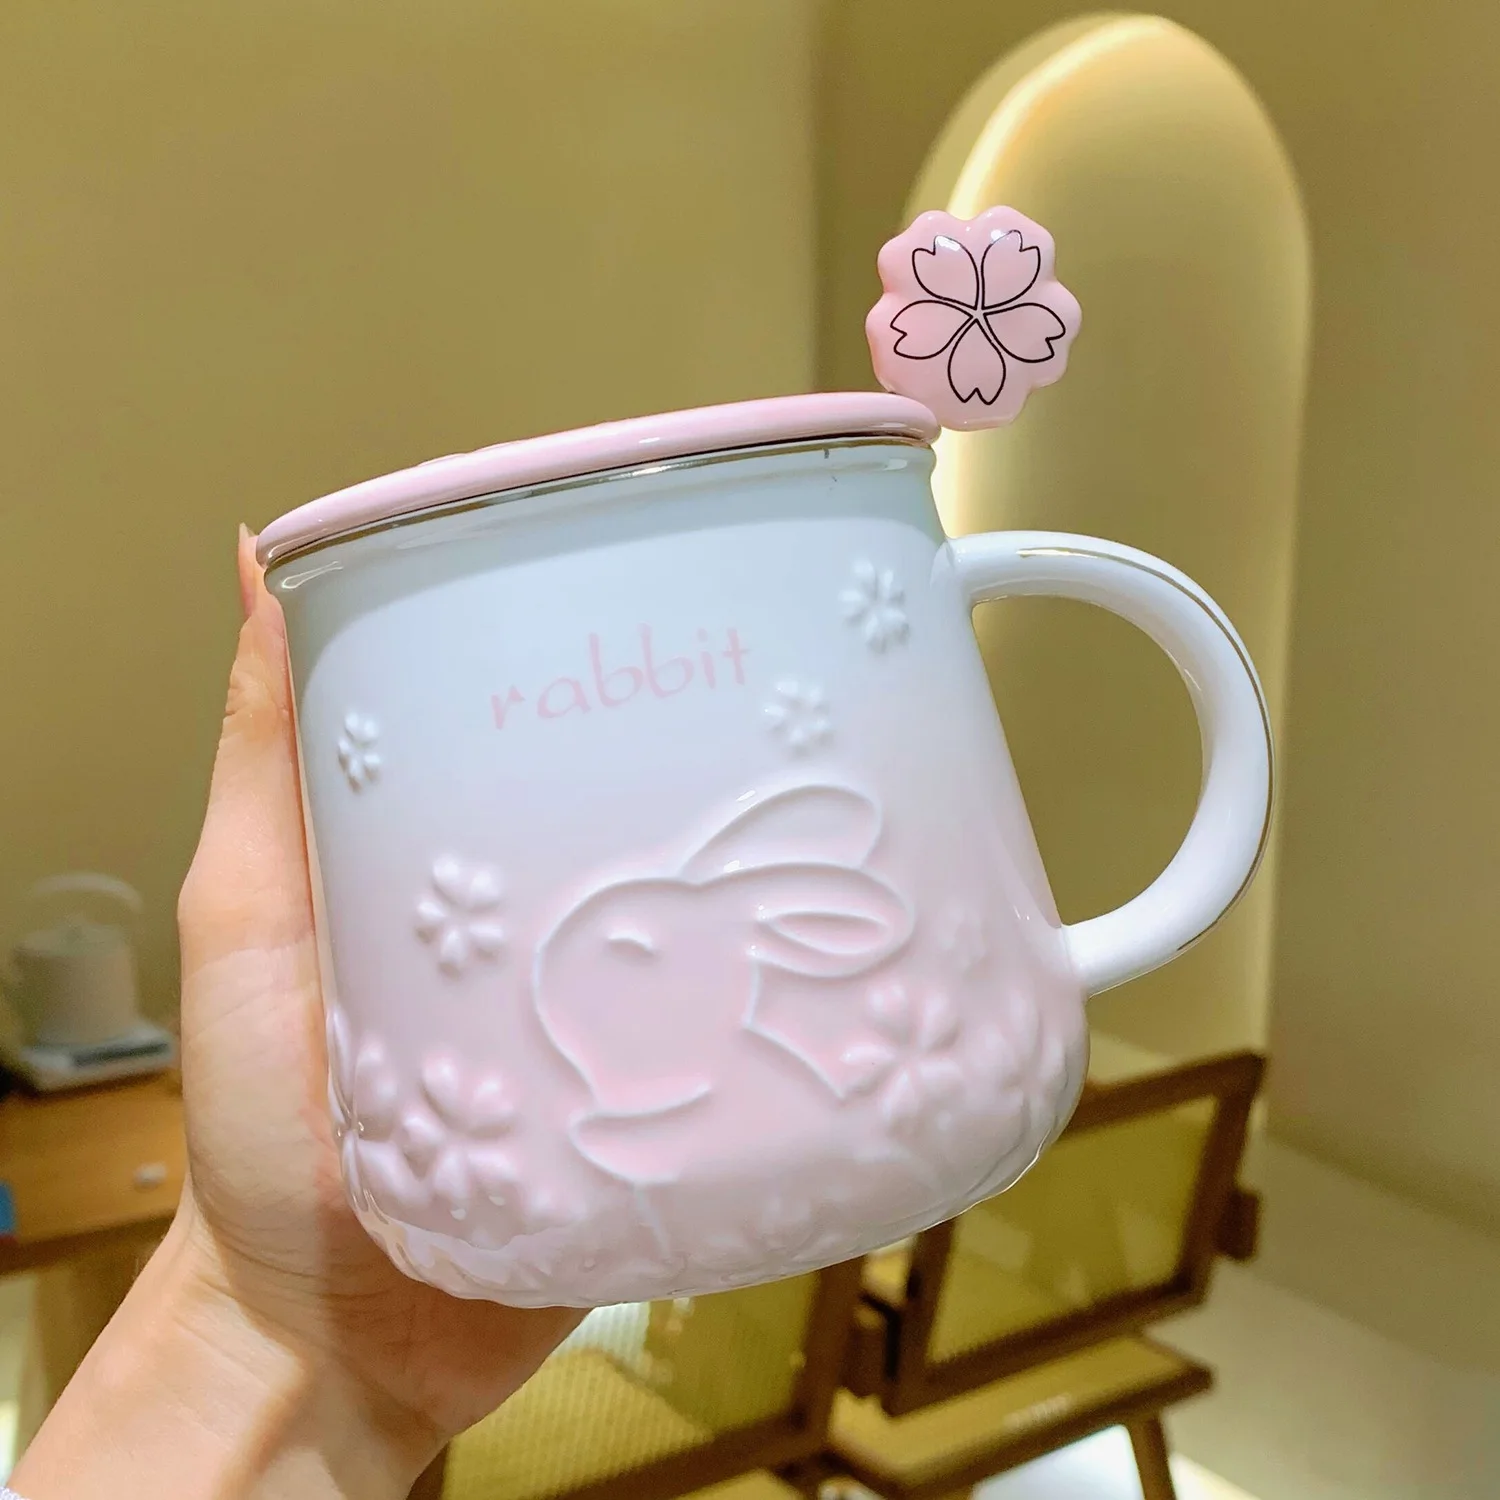 https://ae01.alicdn.com/kf/S24ed3d148e3a43e2a9c7c4bdbcd52705K/Rabbit-Sakura-Pattern-Ceramic-Tea-Coffee-Cups-Juice-Breakfast-Mugs-Simple-Home-Handheld-Type-Milk-Coffee.jpg